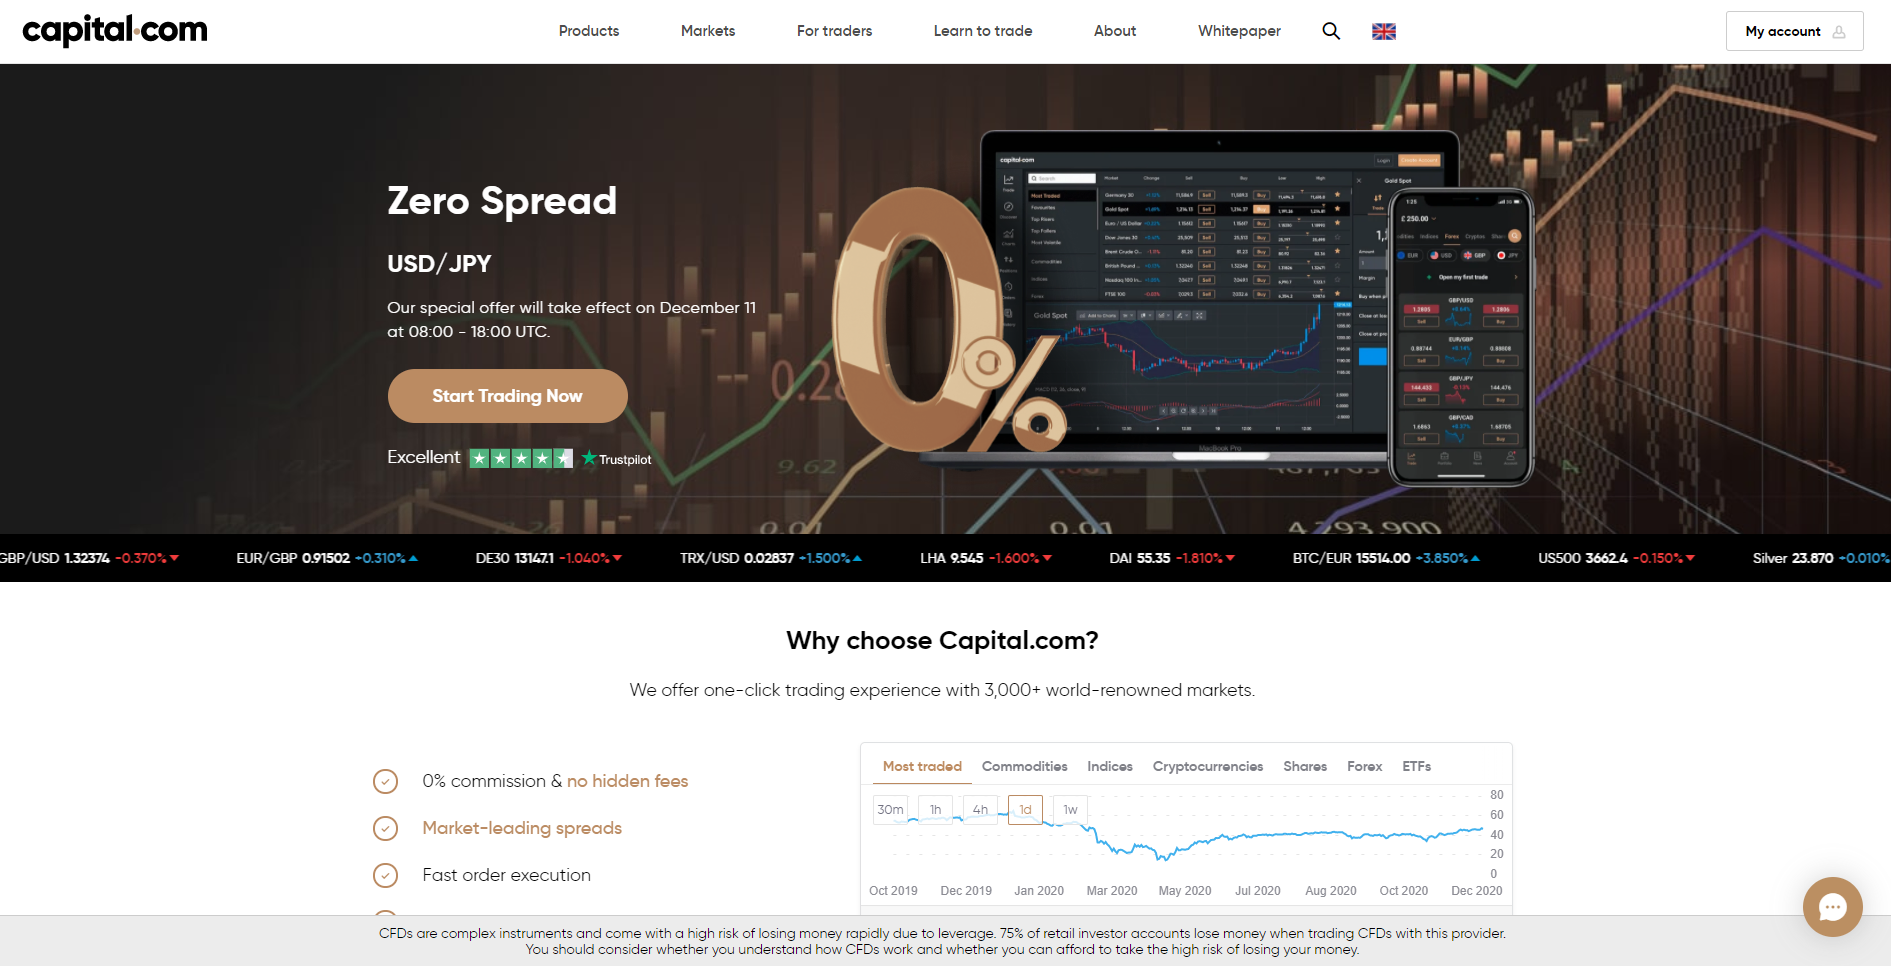 Il sito ufficiale del broker forex Capital.com